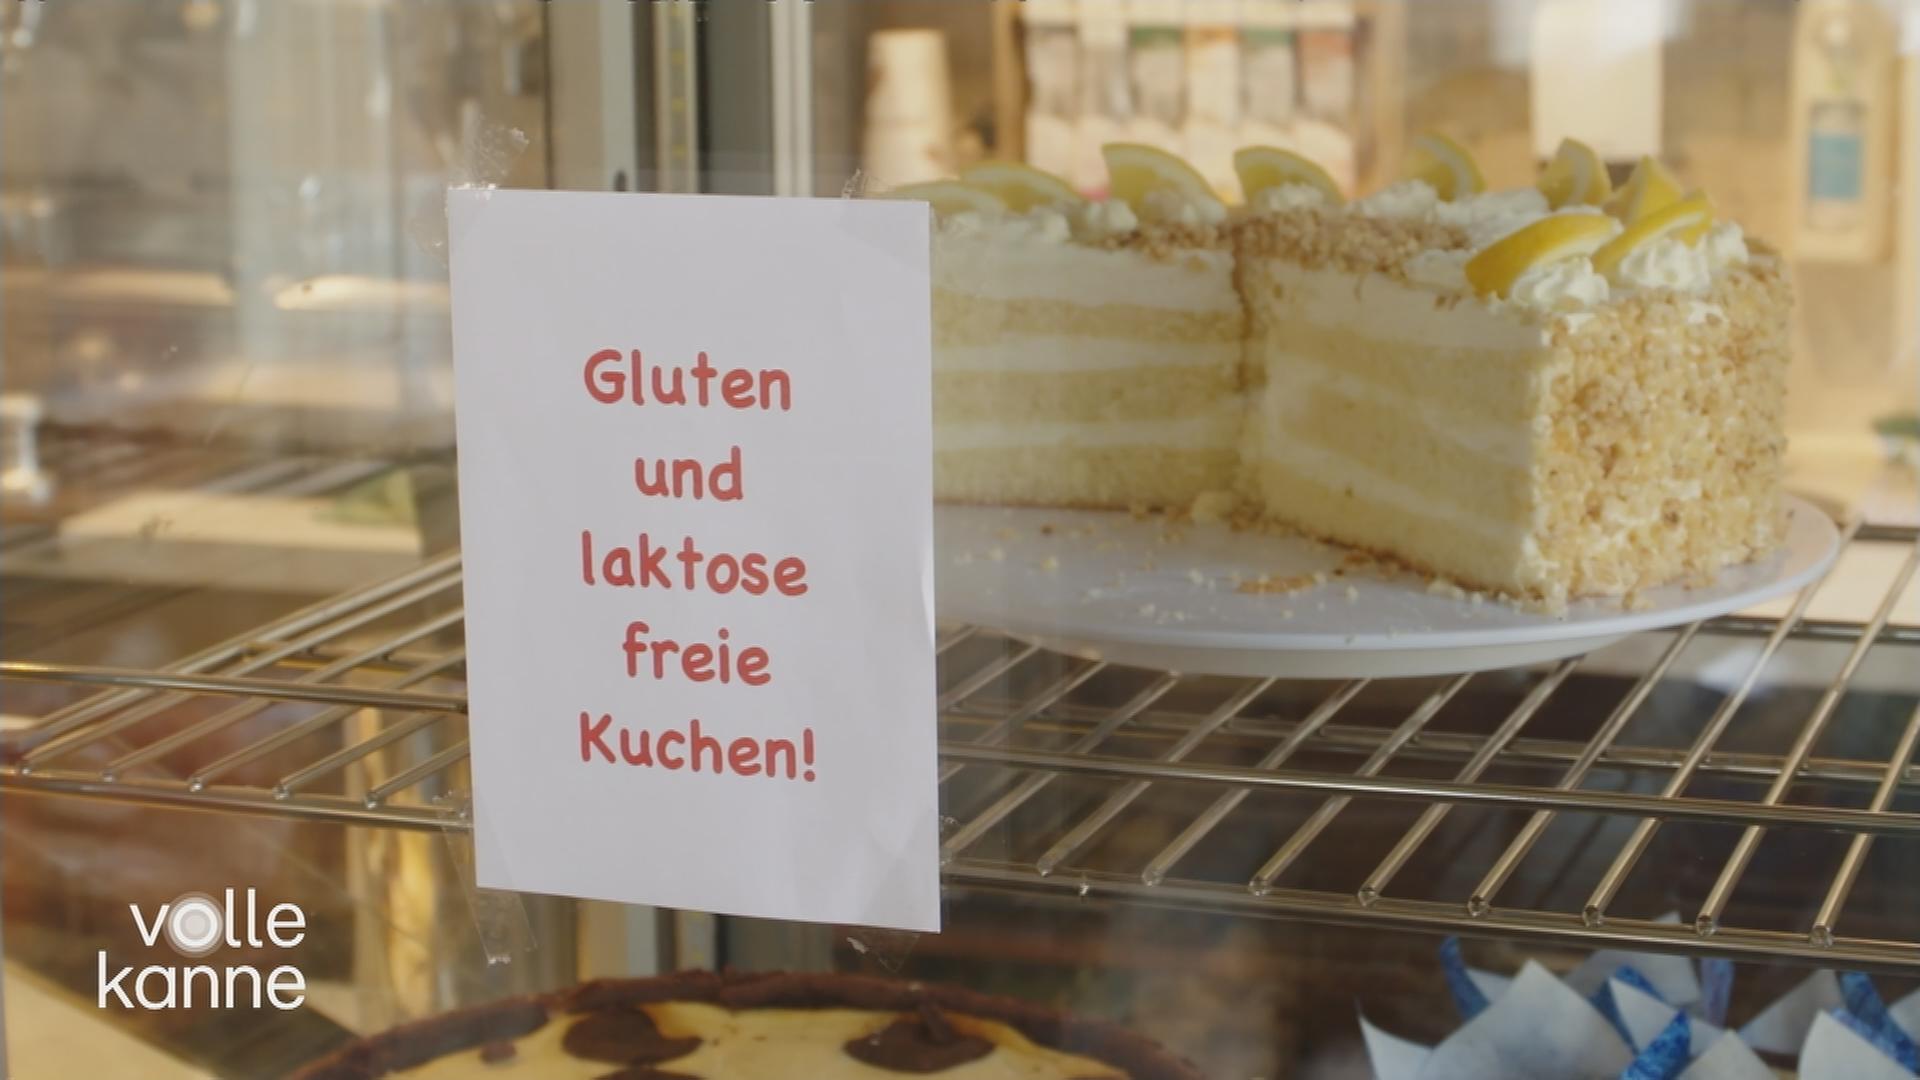 Kuchen-Theke mit Zettel an der Scheibe auf dem steht: "Gluten und laktose freie Kuchen"